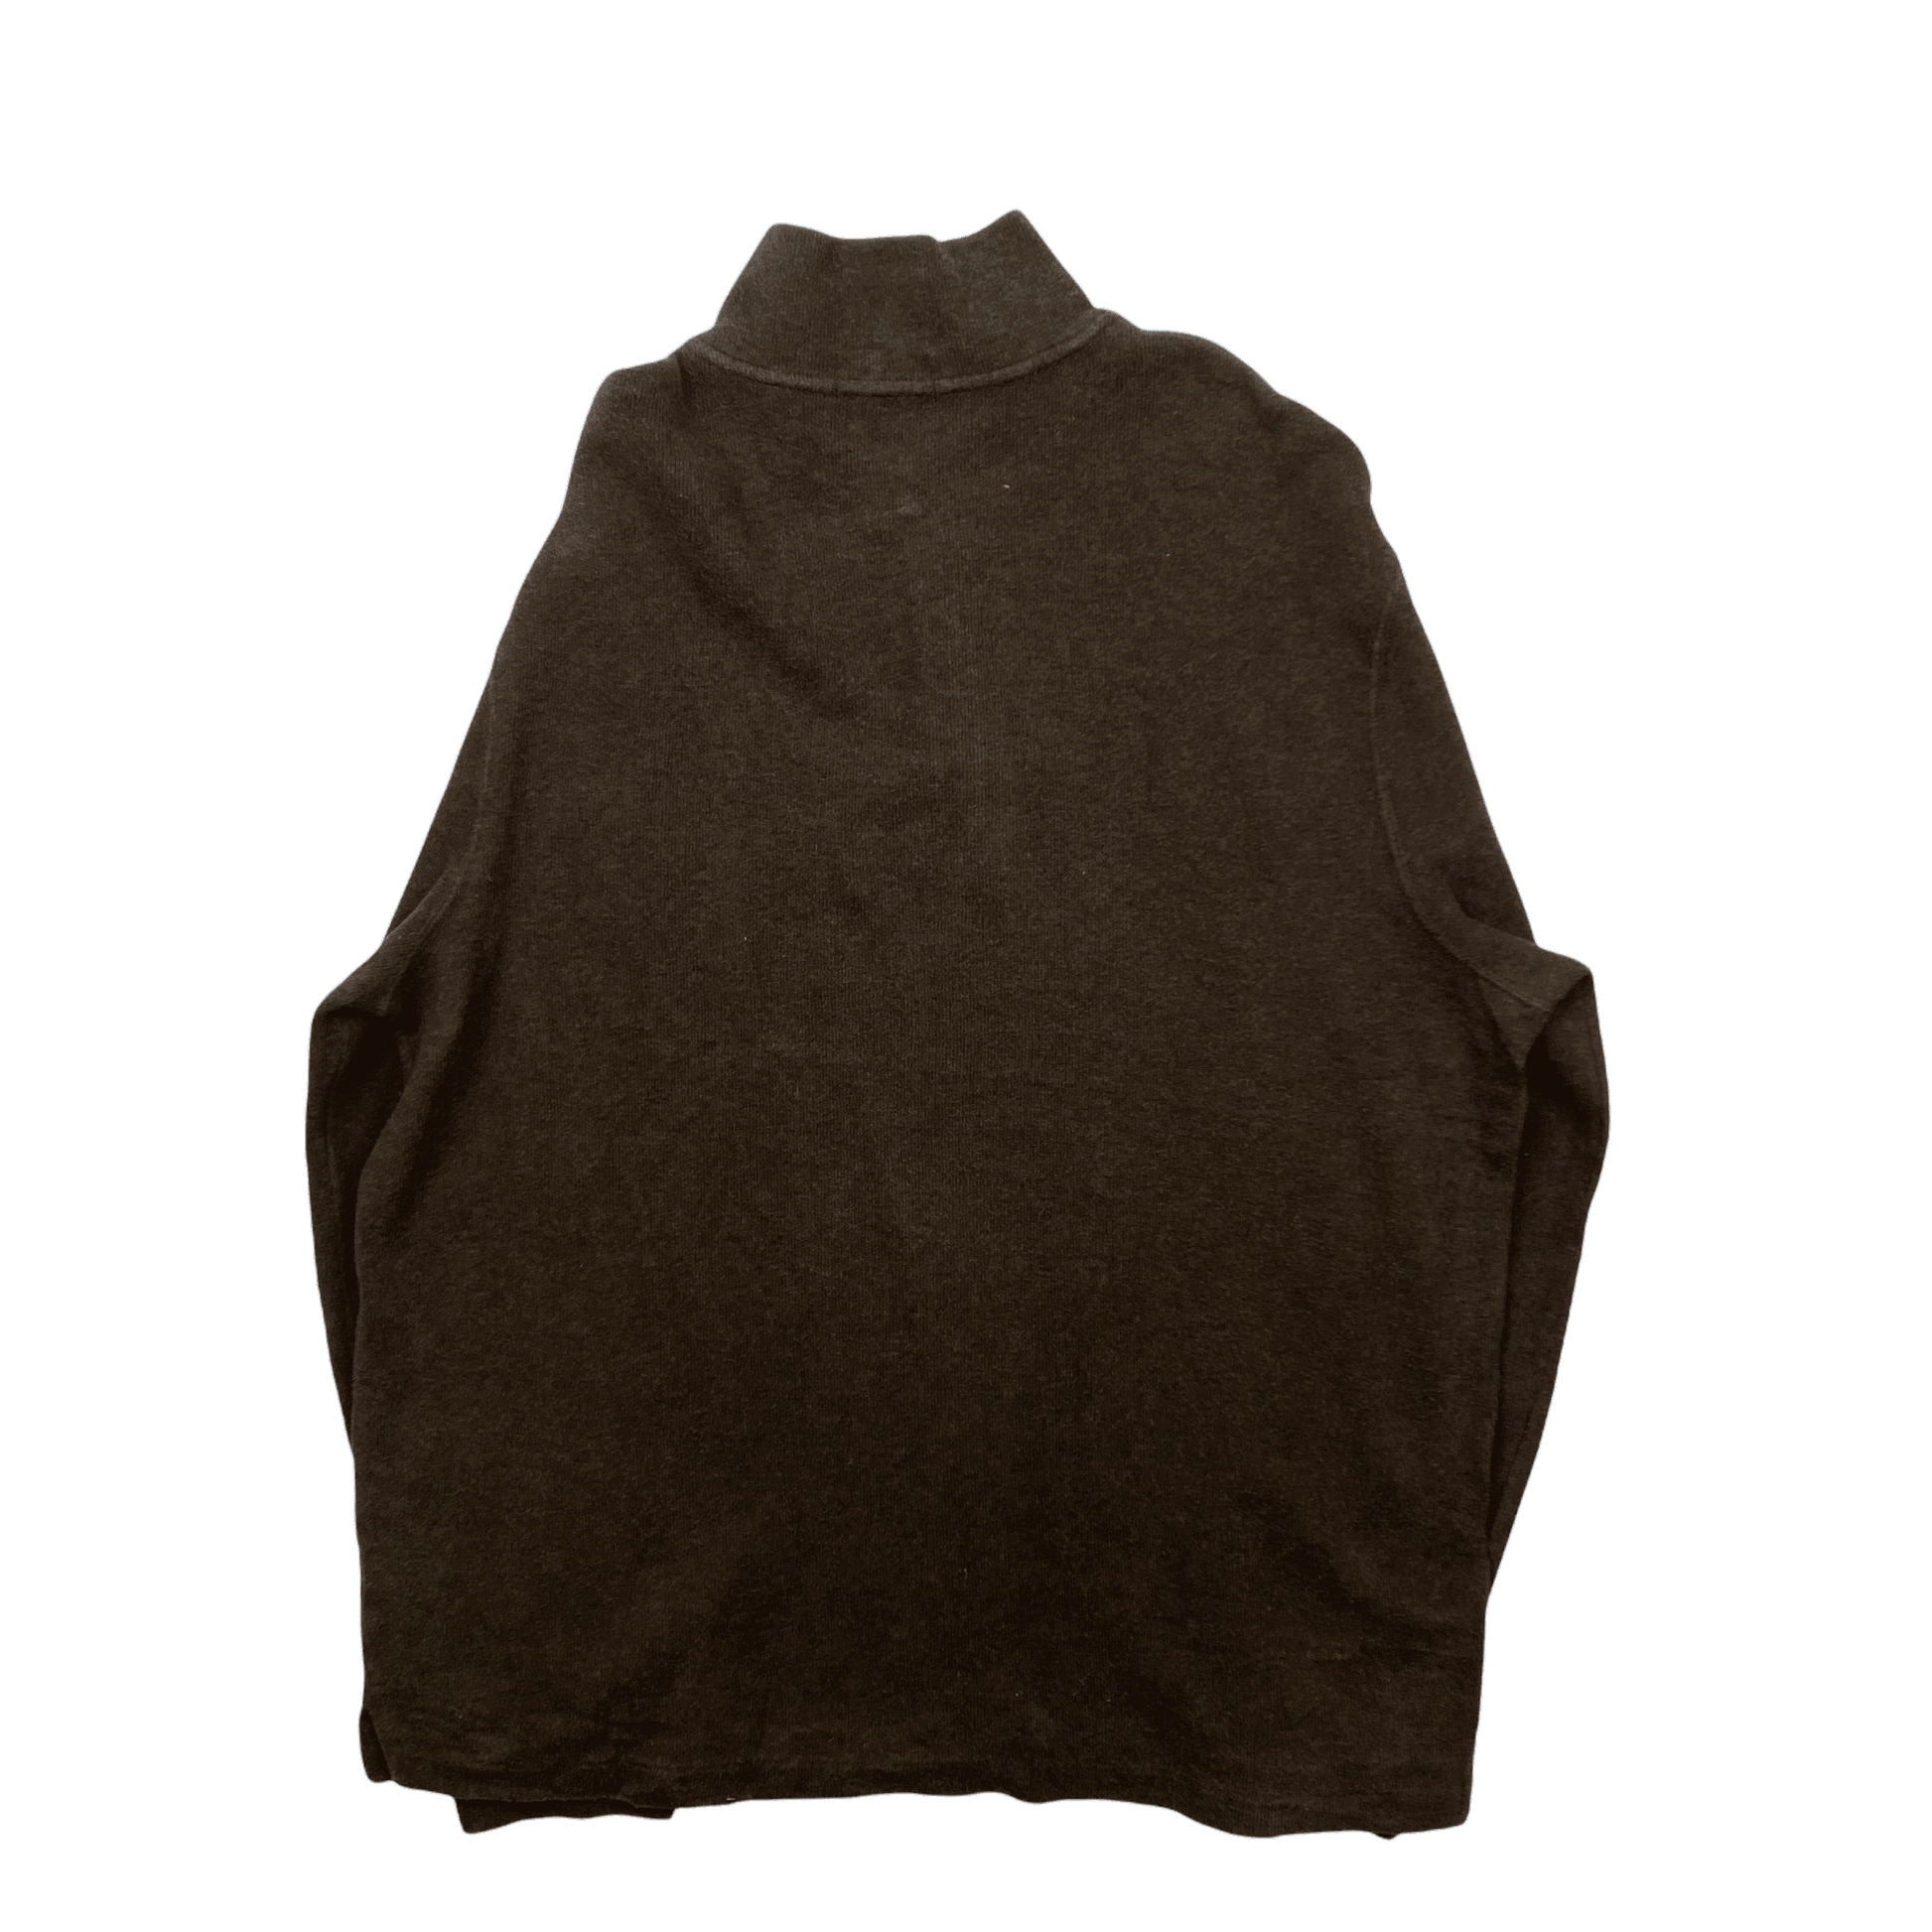 Vintage 90s Brown Polo Ralph Lauren Quarter Zip Sweatshirt - Large - The Streetwear Studio